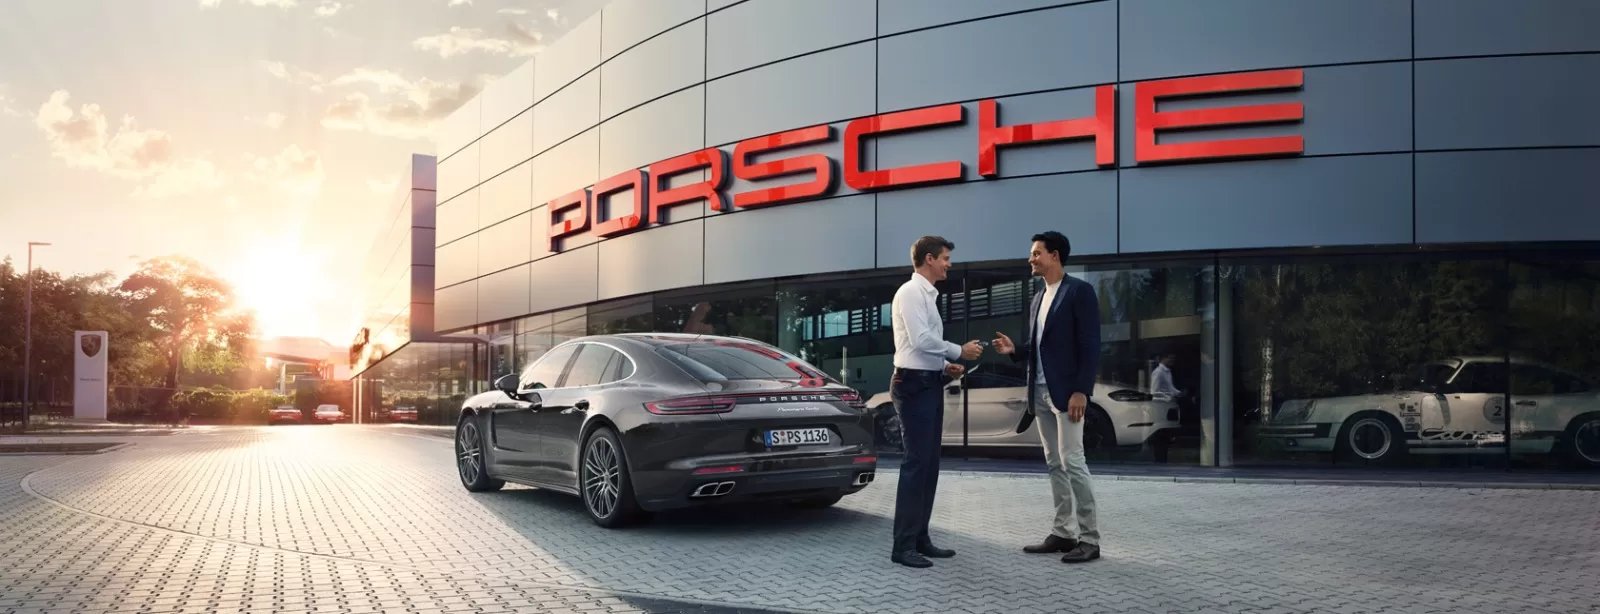 Изменение режима работы сервисной станции Porsche